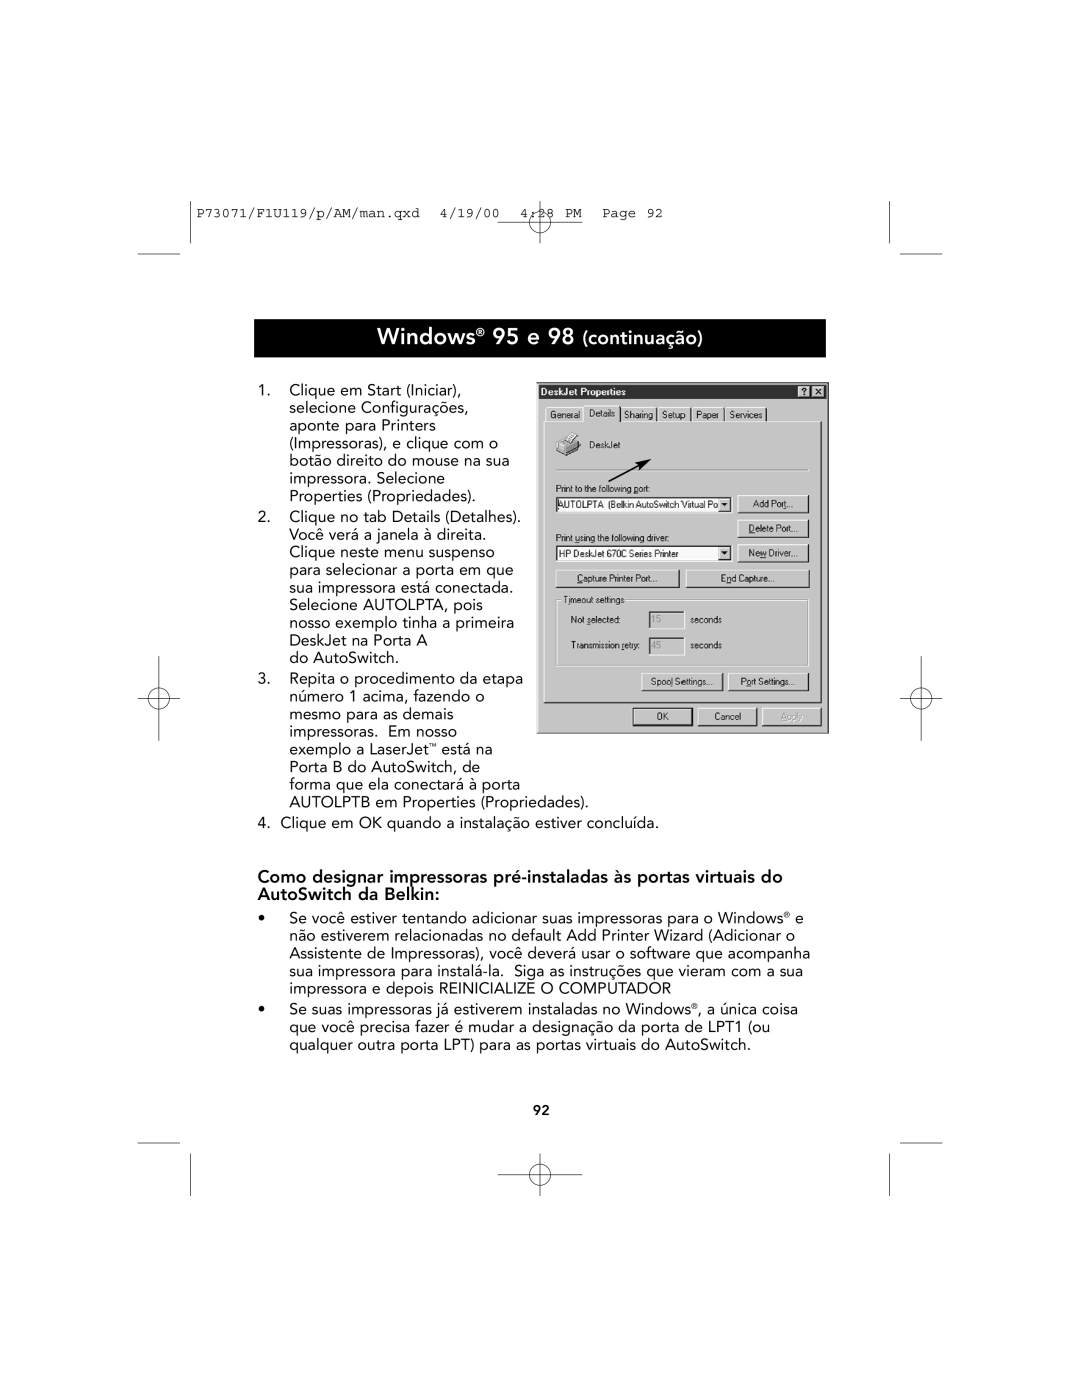 Belkin F1U119 user manual Windows 95 e 98 continuação, Clique em Start Iniciar 